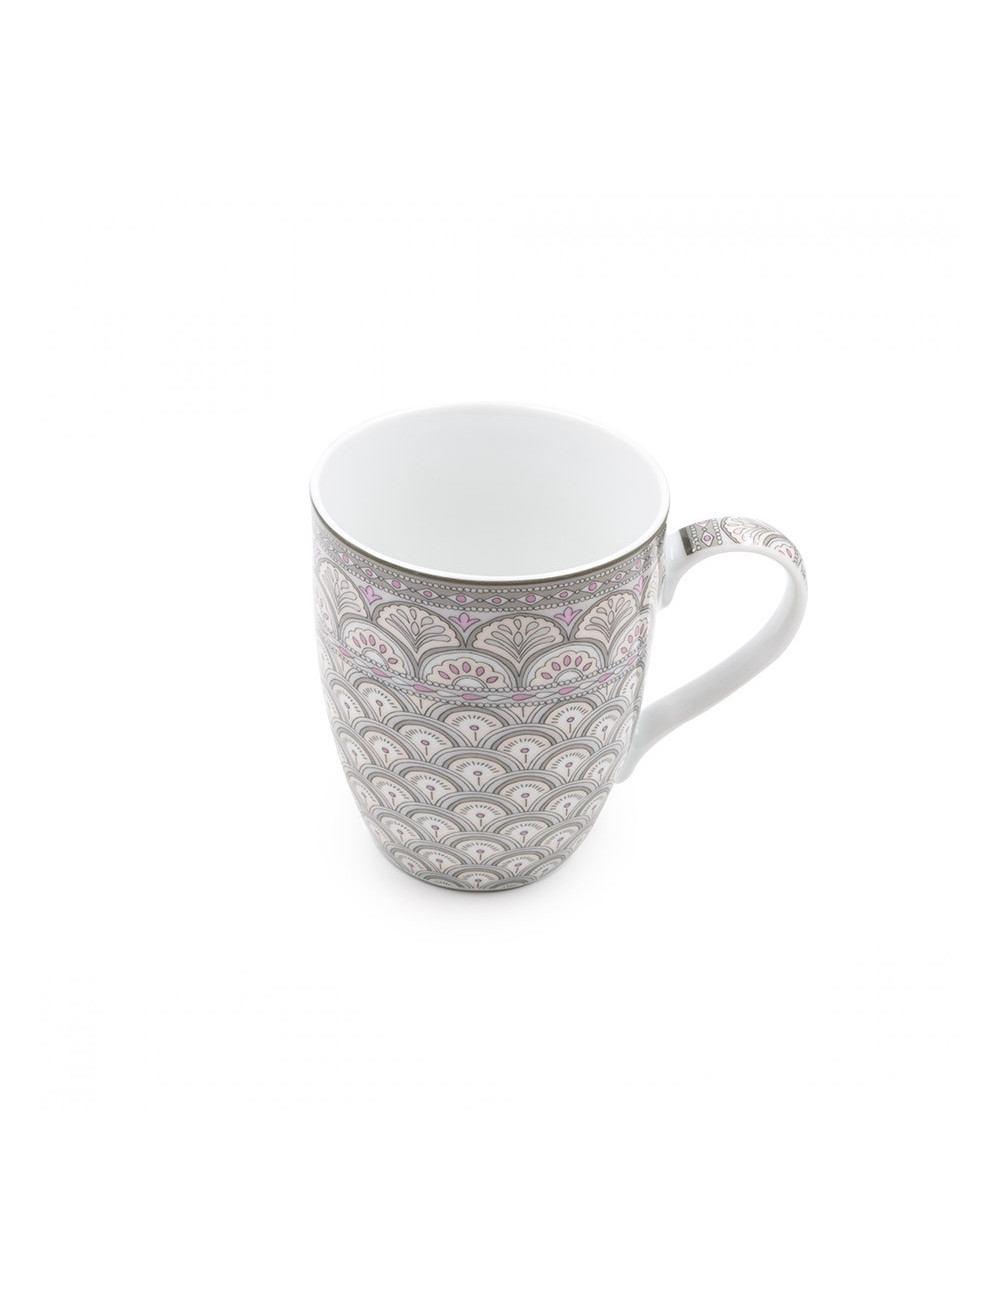 Pratica mug fans in grigio e rosa per gli amanti di tè e tisane - La Pianta del Tè acquista on line